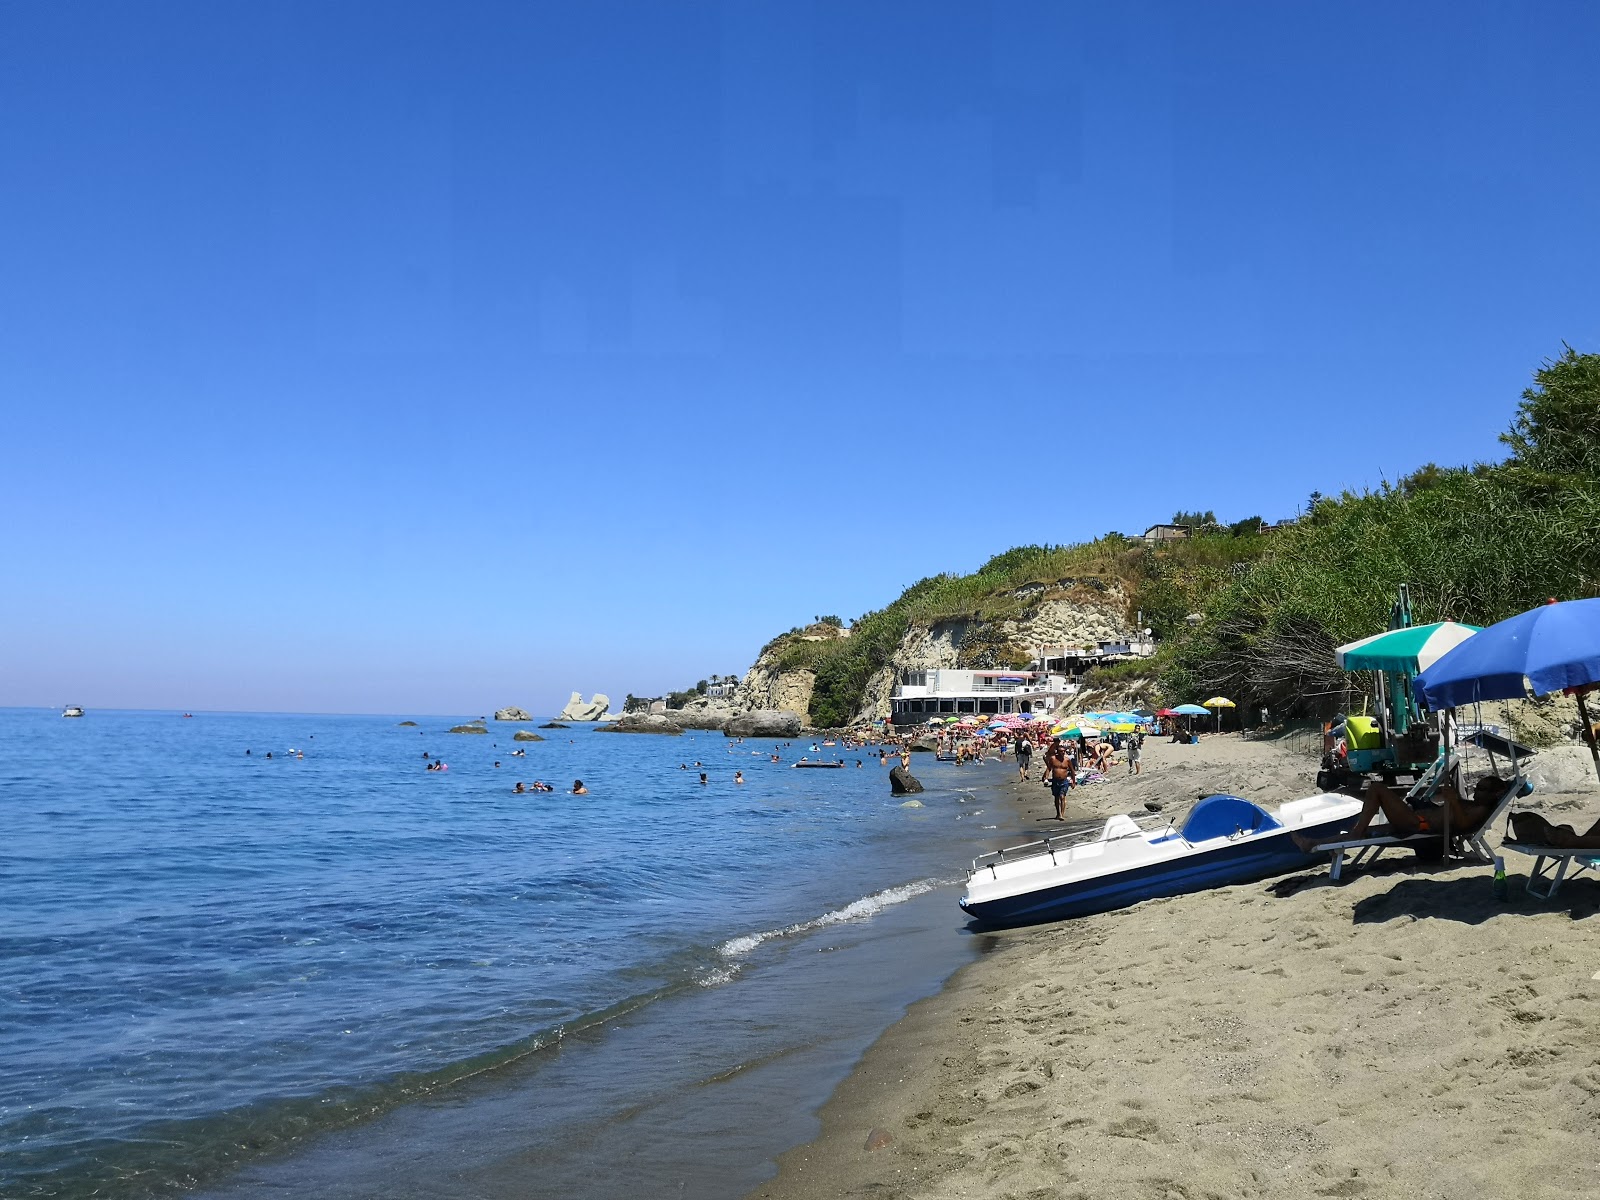 Foto av Spiaggia Cava Dell'Isola med rymlig bukt